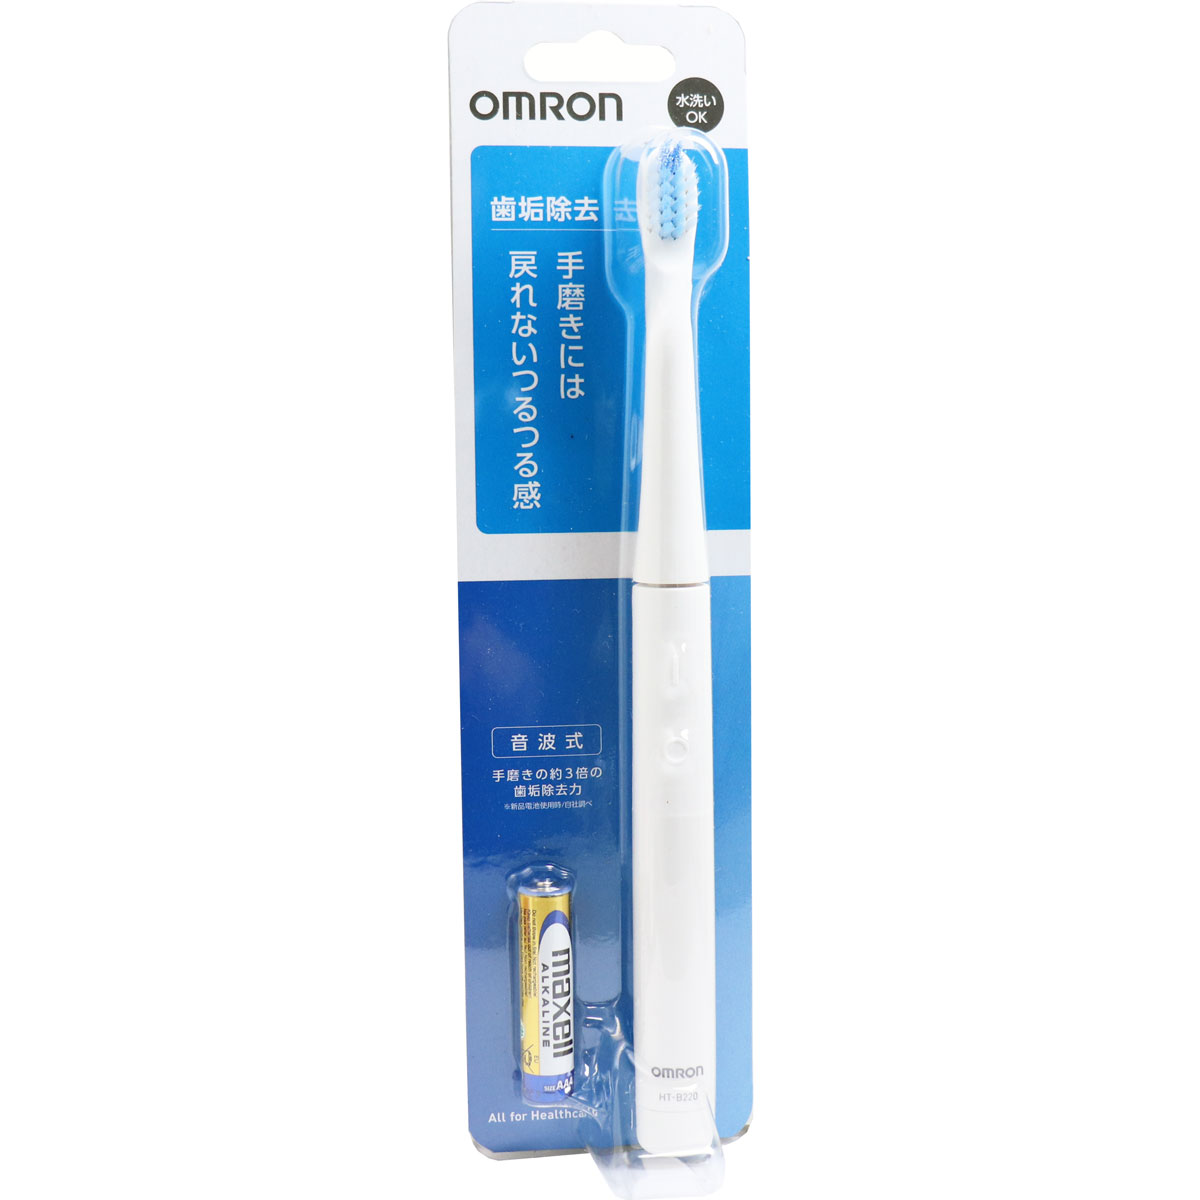 優良配送対応」「オムロン」 音波式電動歯ブラシ HT-B303-W 1台